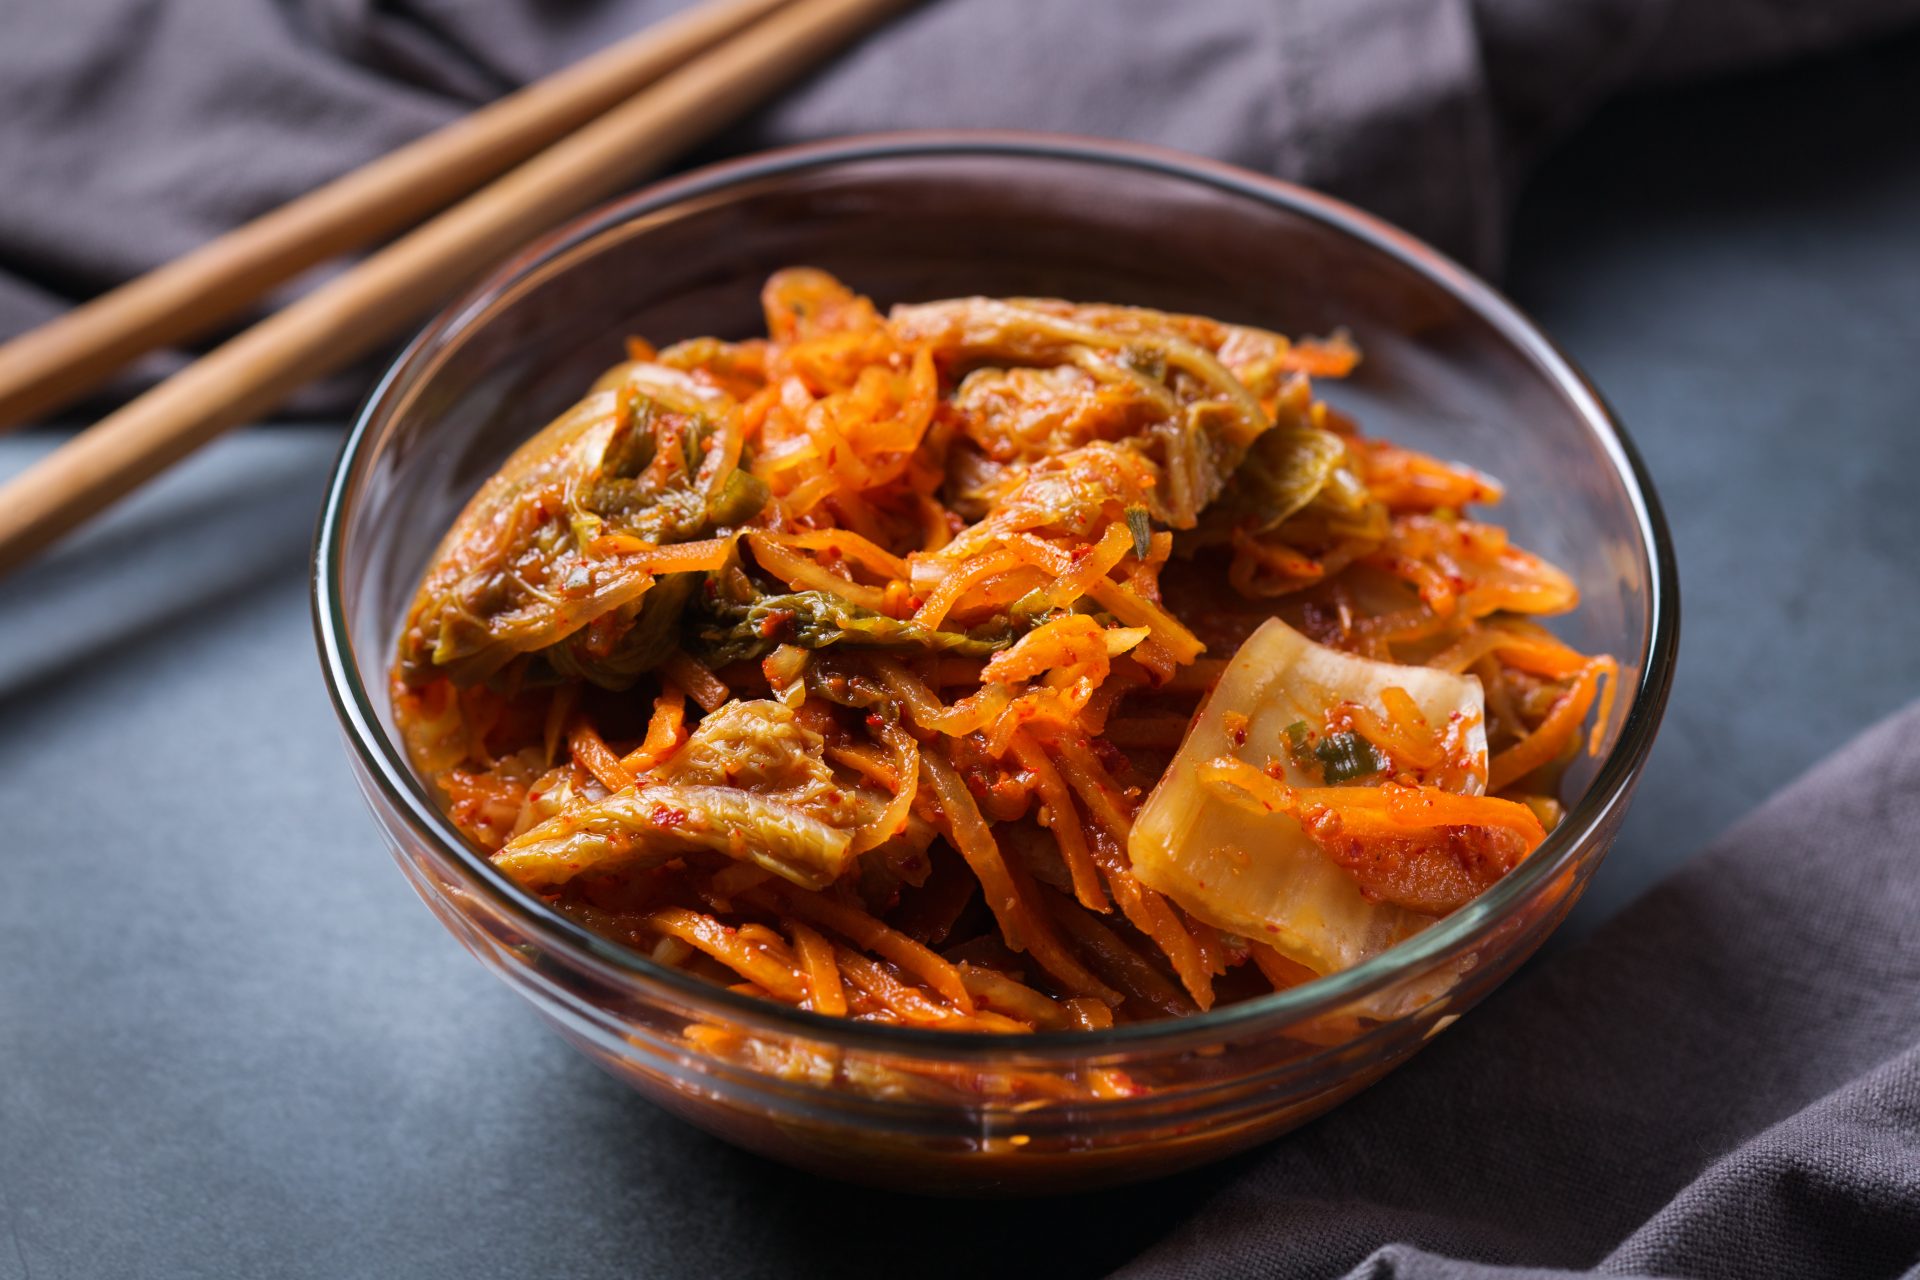 manfaat kimchi